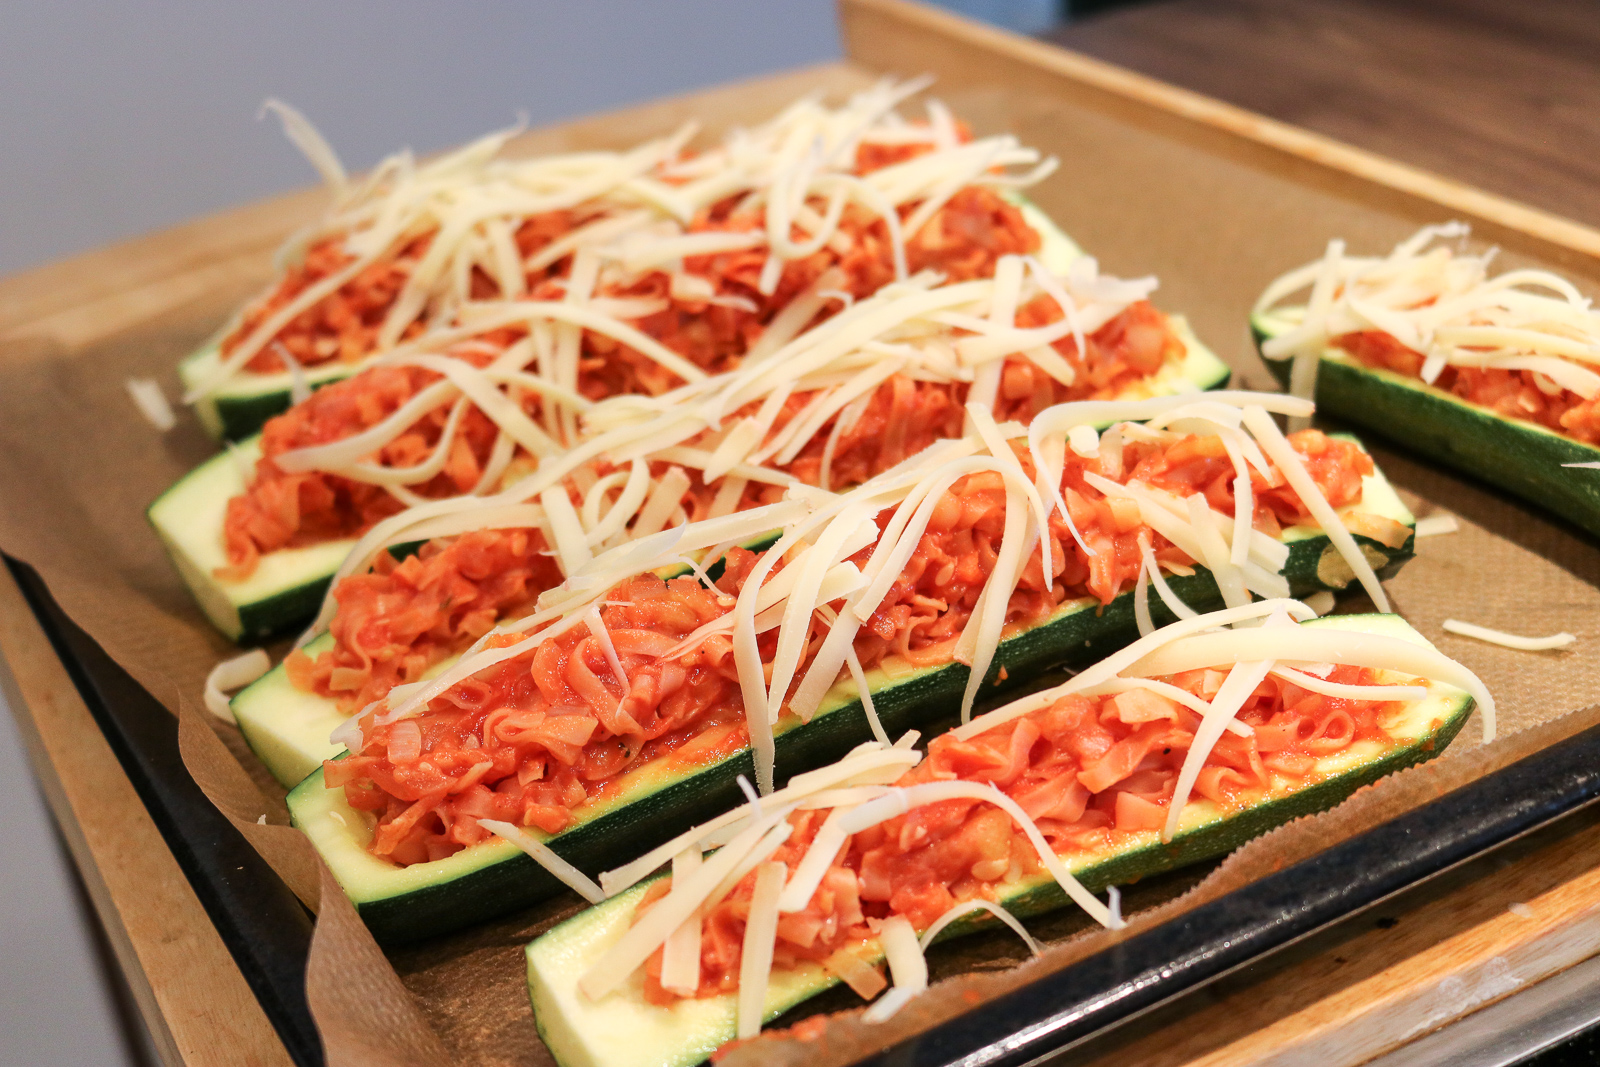 Gefüllte Zucchini - vegetarisch und schnell zubereitet- Zucchini gefüllt mit Tomatensauce und Wok Nudel - Rezept - vegetarisches Rezept - Fashionladyloves by Tamara Wagner - Food Blog